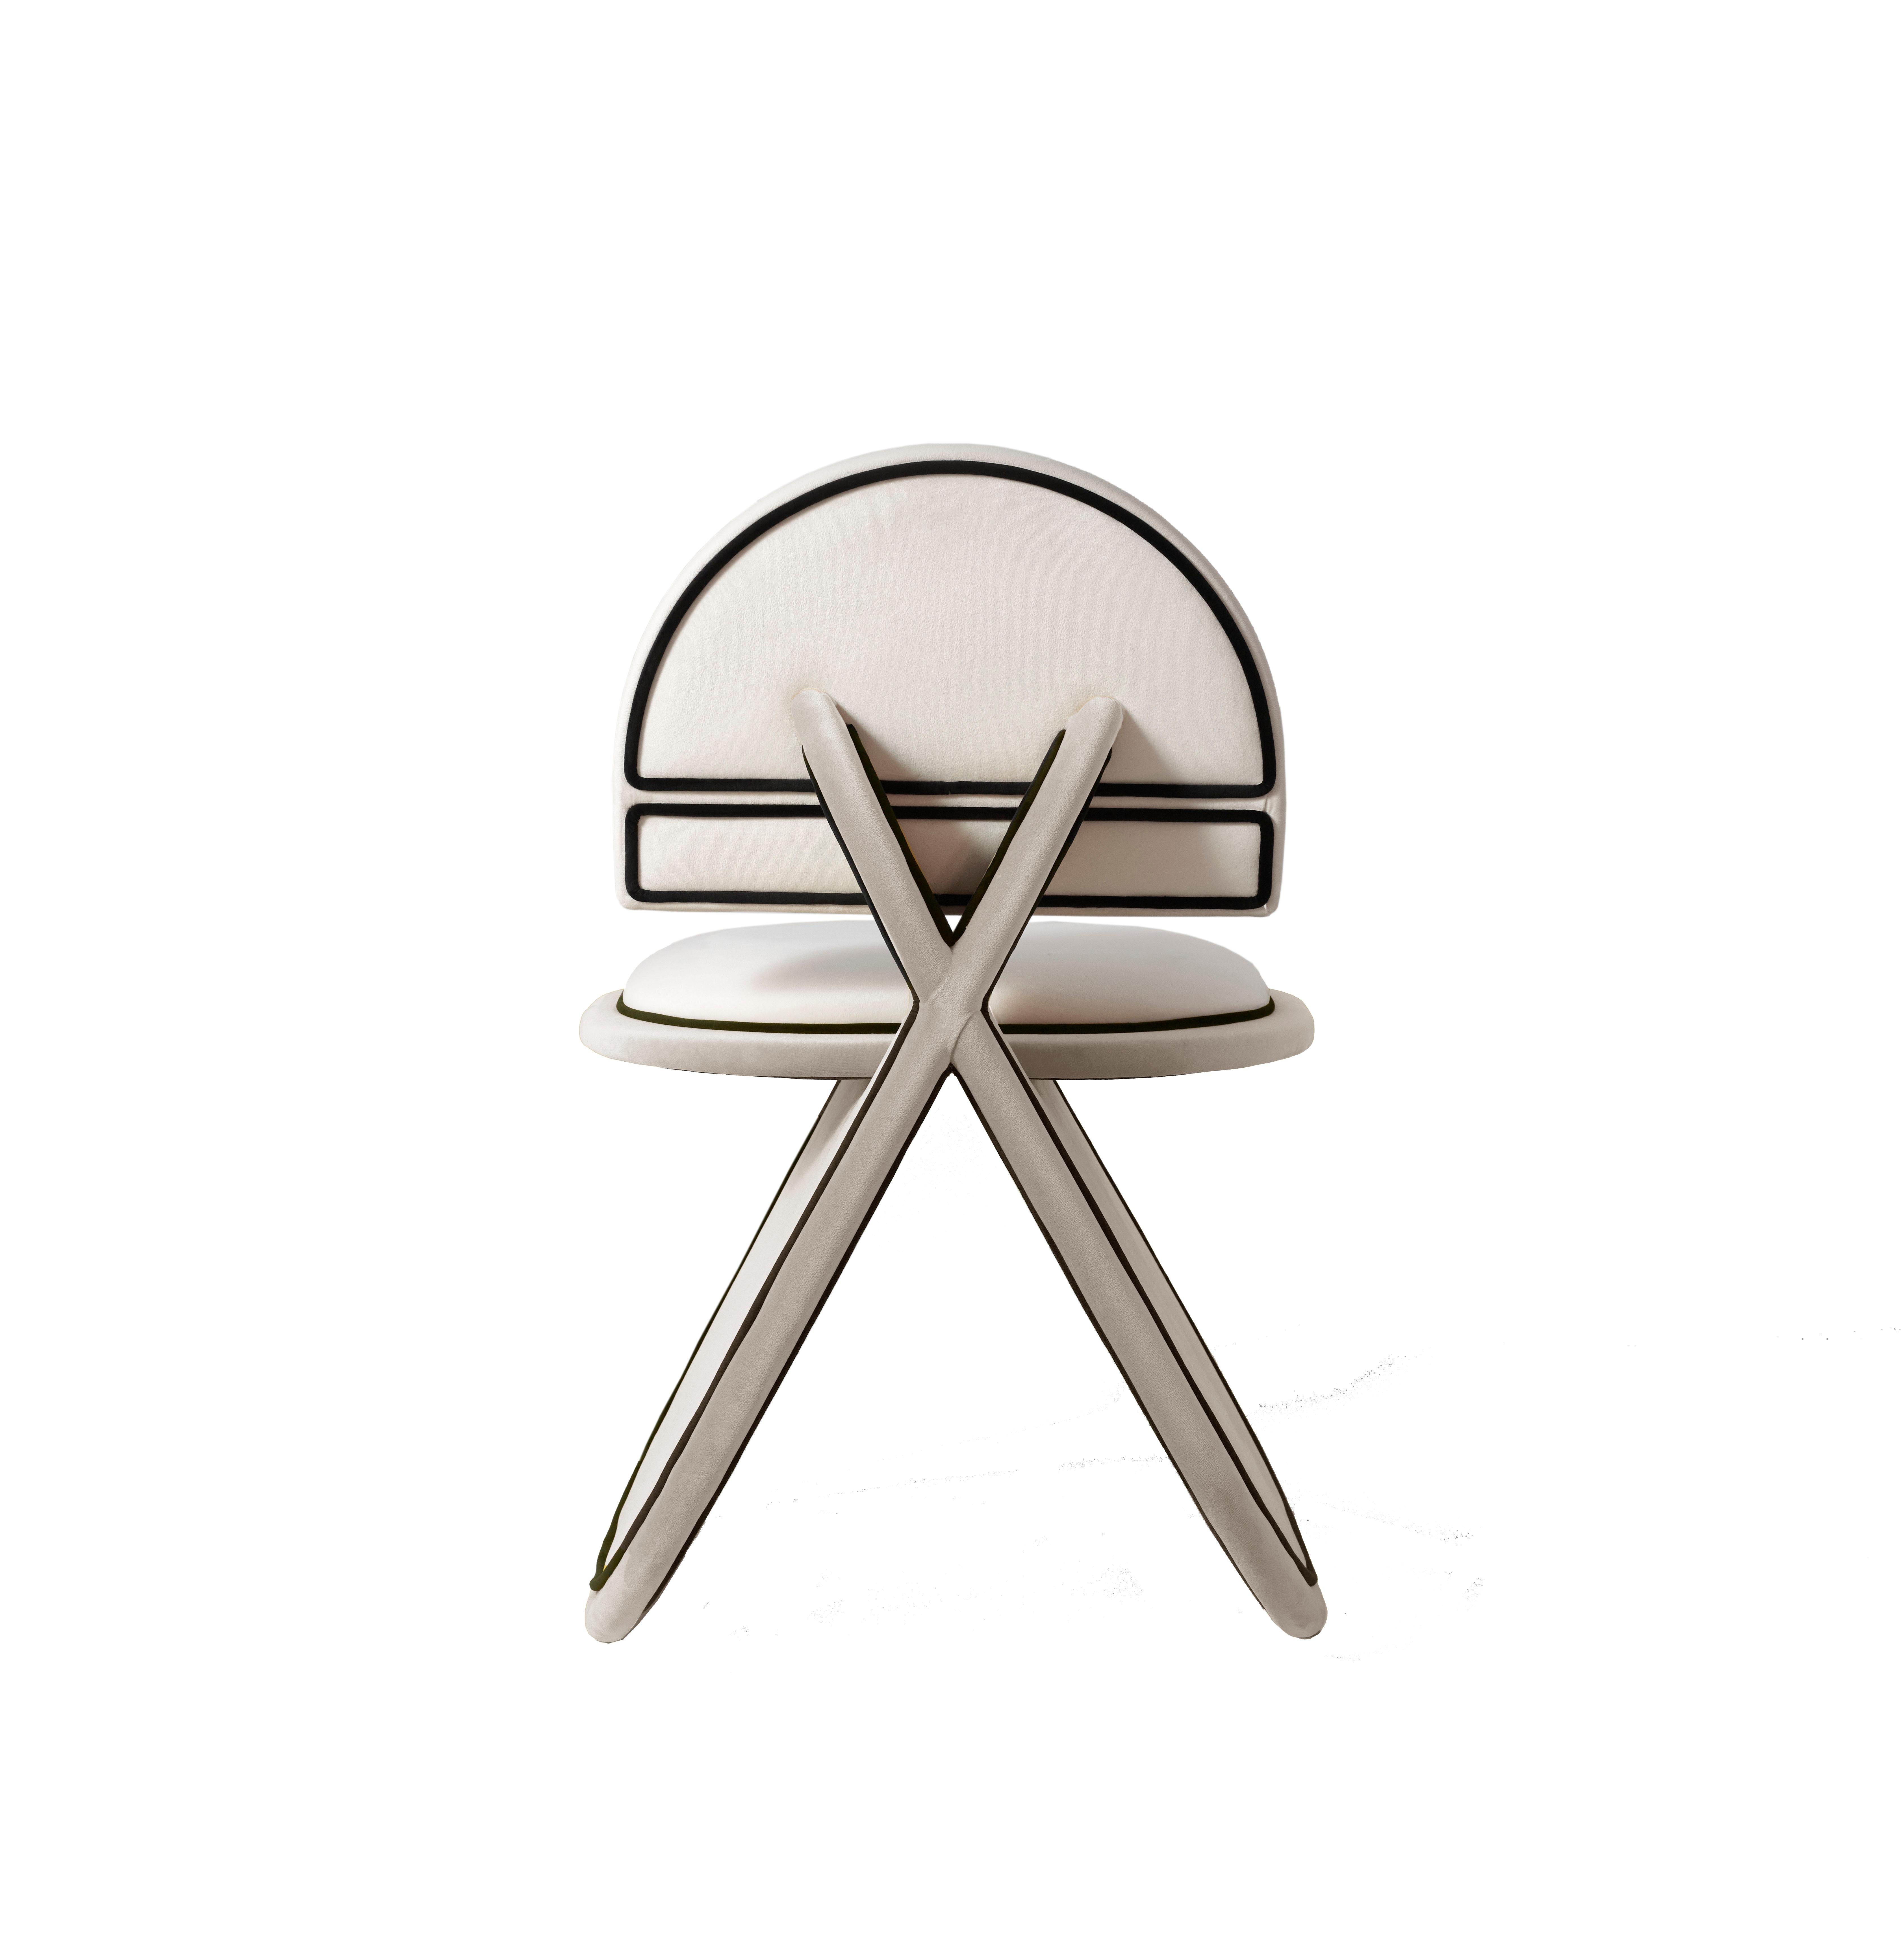 La chaise Meco est l'une des pièces les plus récentes de DOVAIN STUDIO. Ses formes géométriques et arrondies rappellent en quelque sorte la pureté et l'élégance japonaises, mais avec une touche picaresque et amusante que l'on retrouve dans chaque